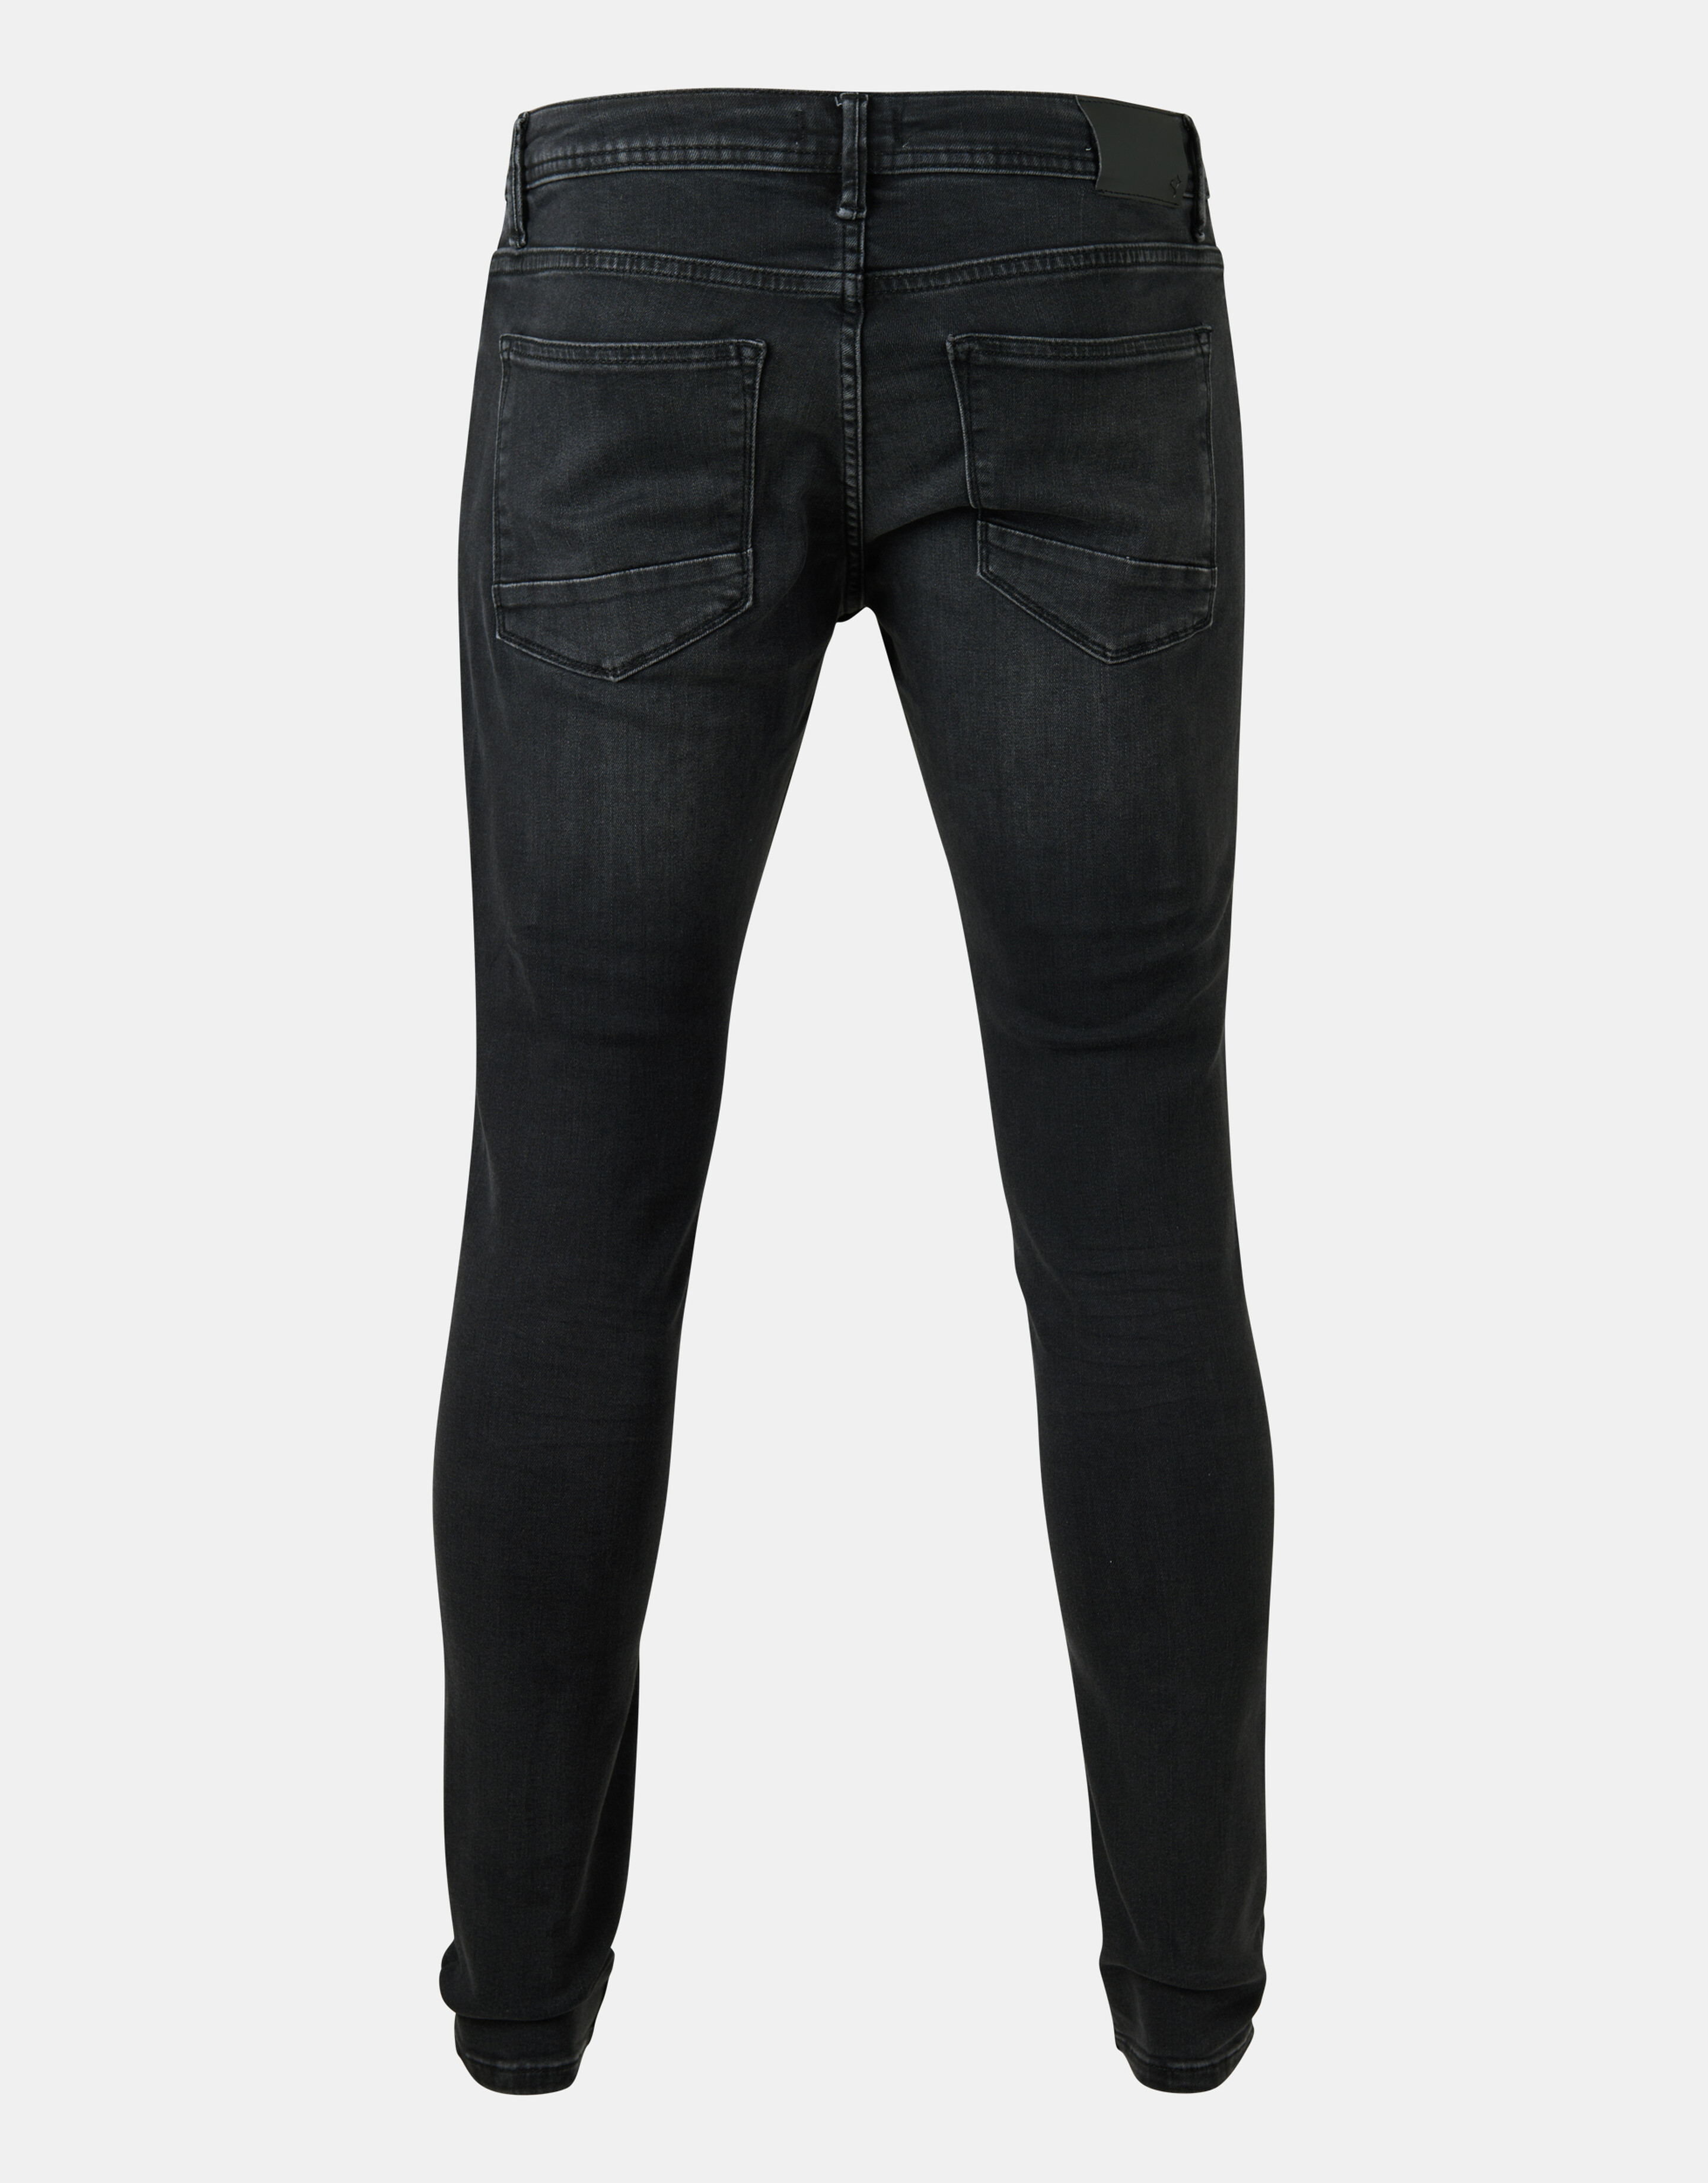 Skinny Jeans L32 Refill